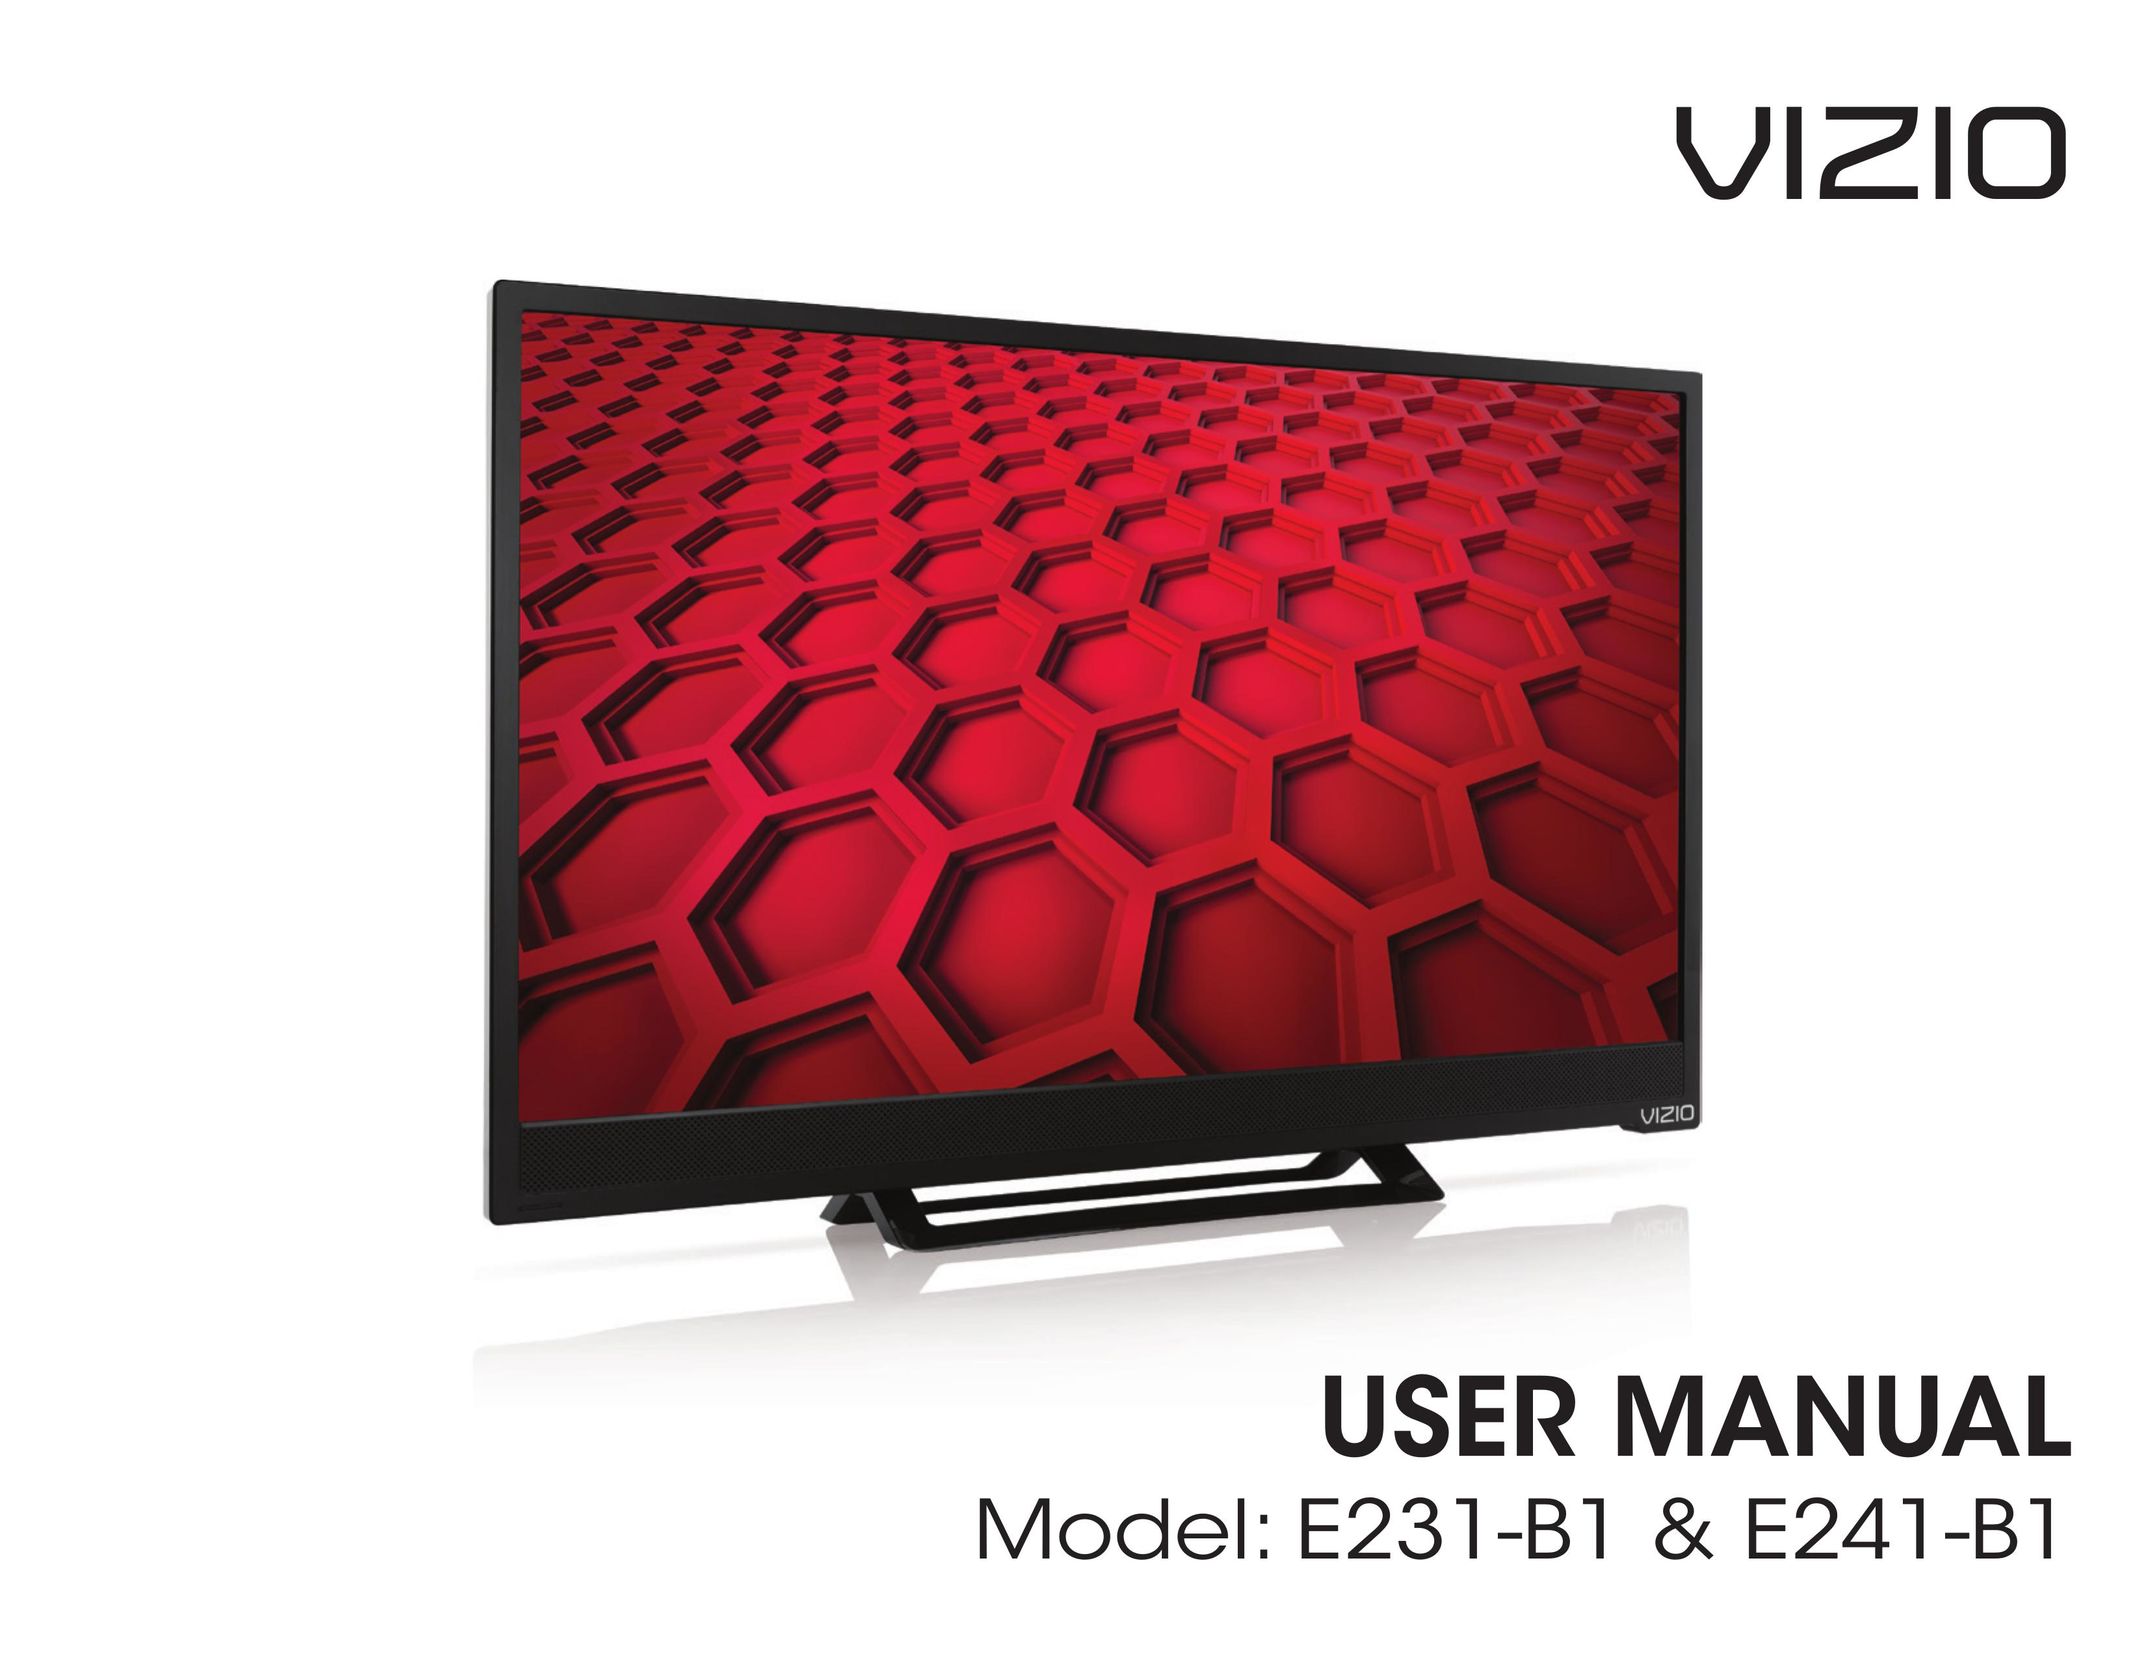 Vizio E241-B1 TV Antenna User Manual